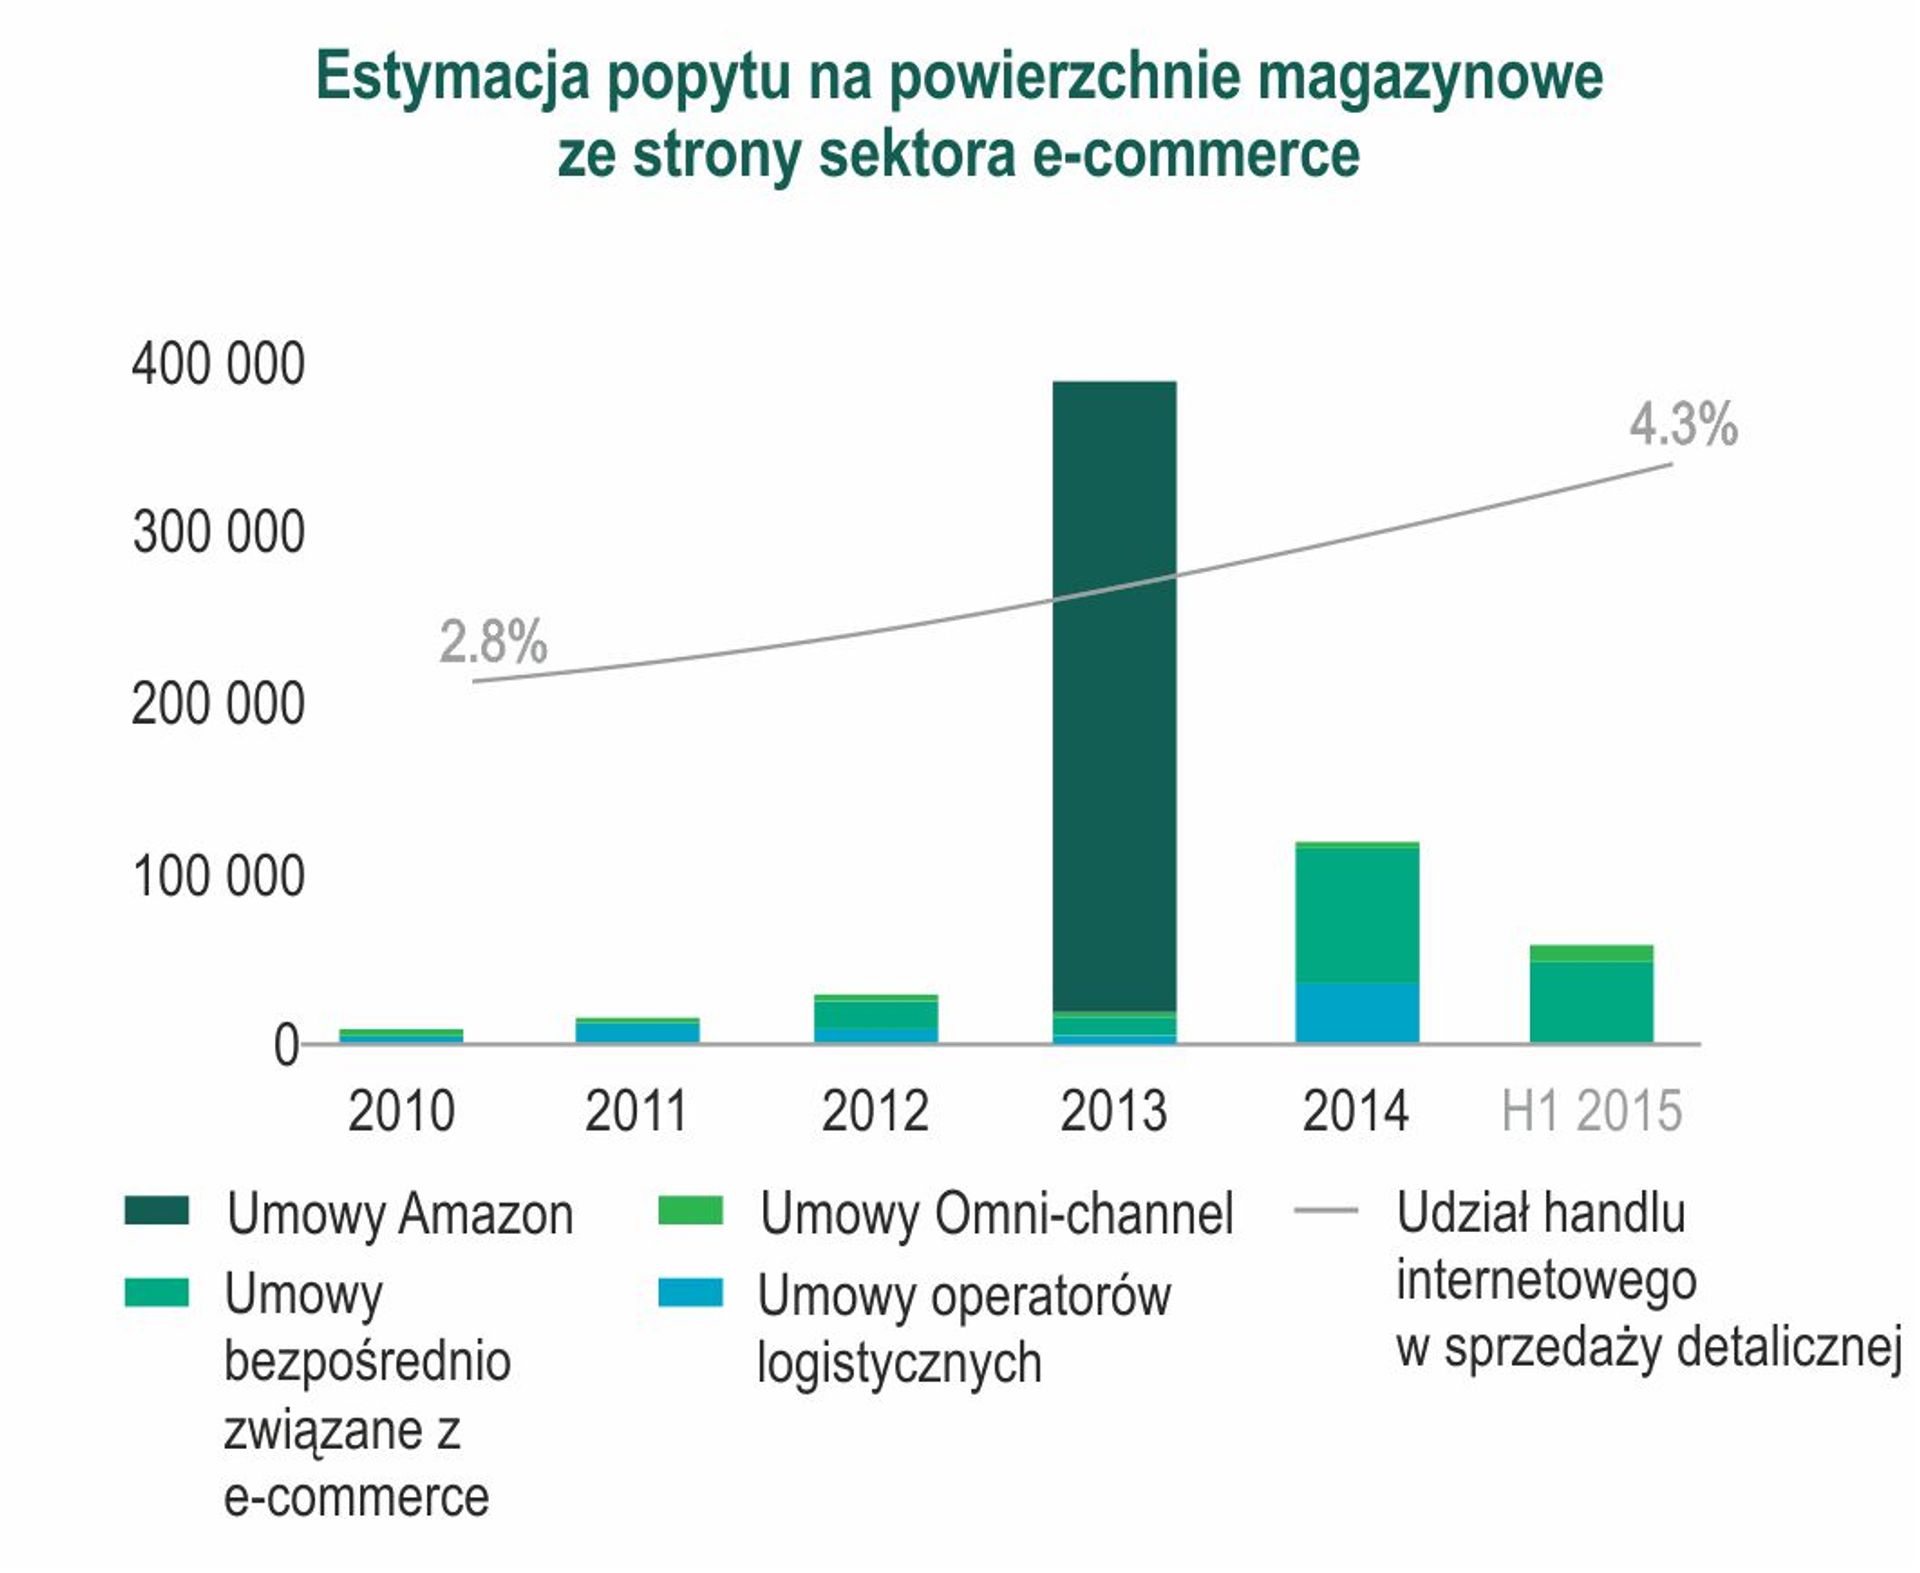  E-commerce – polski rynek magazynowy gotowy na rozwój sektora